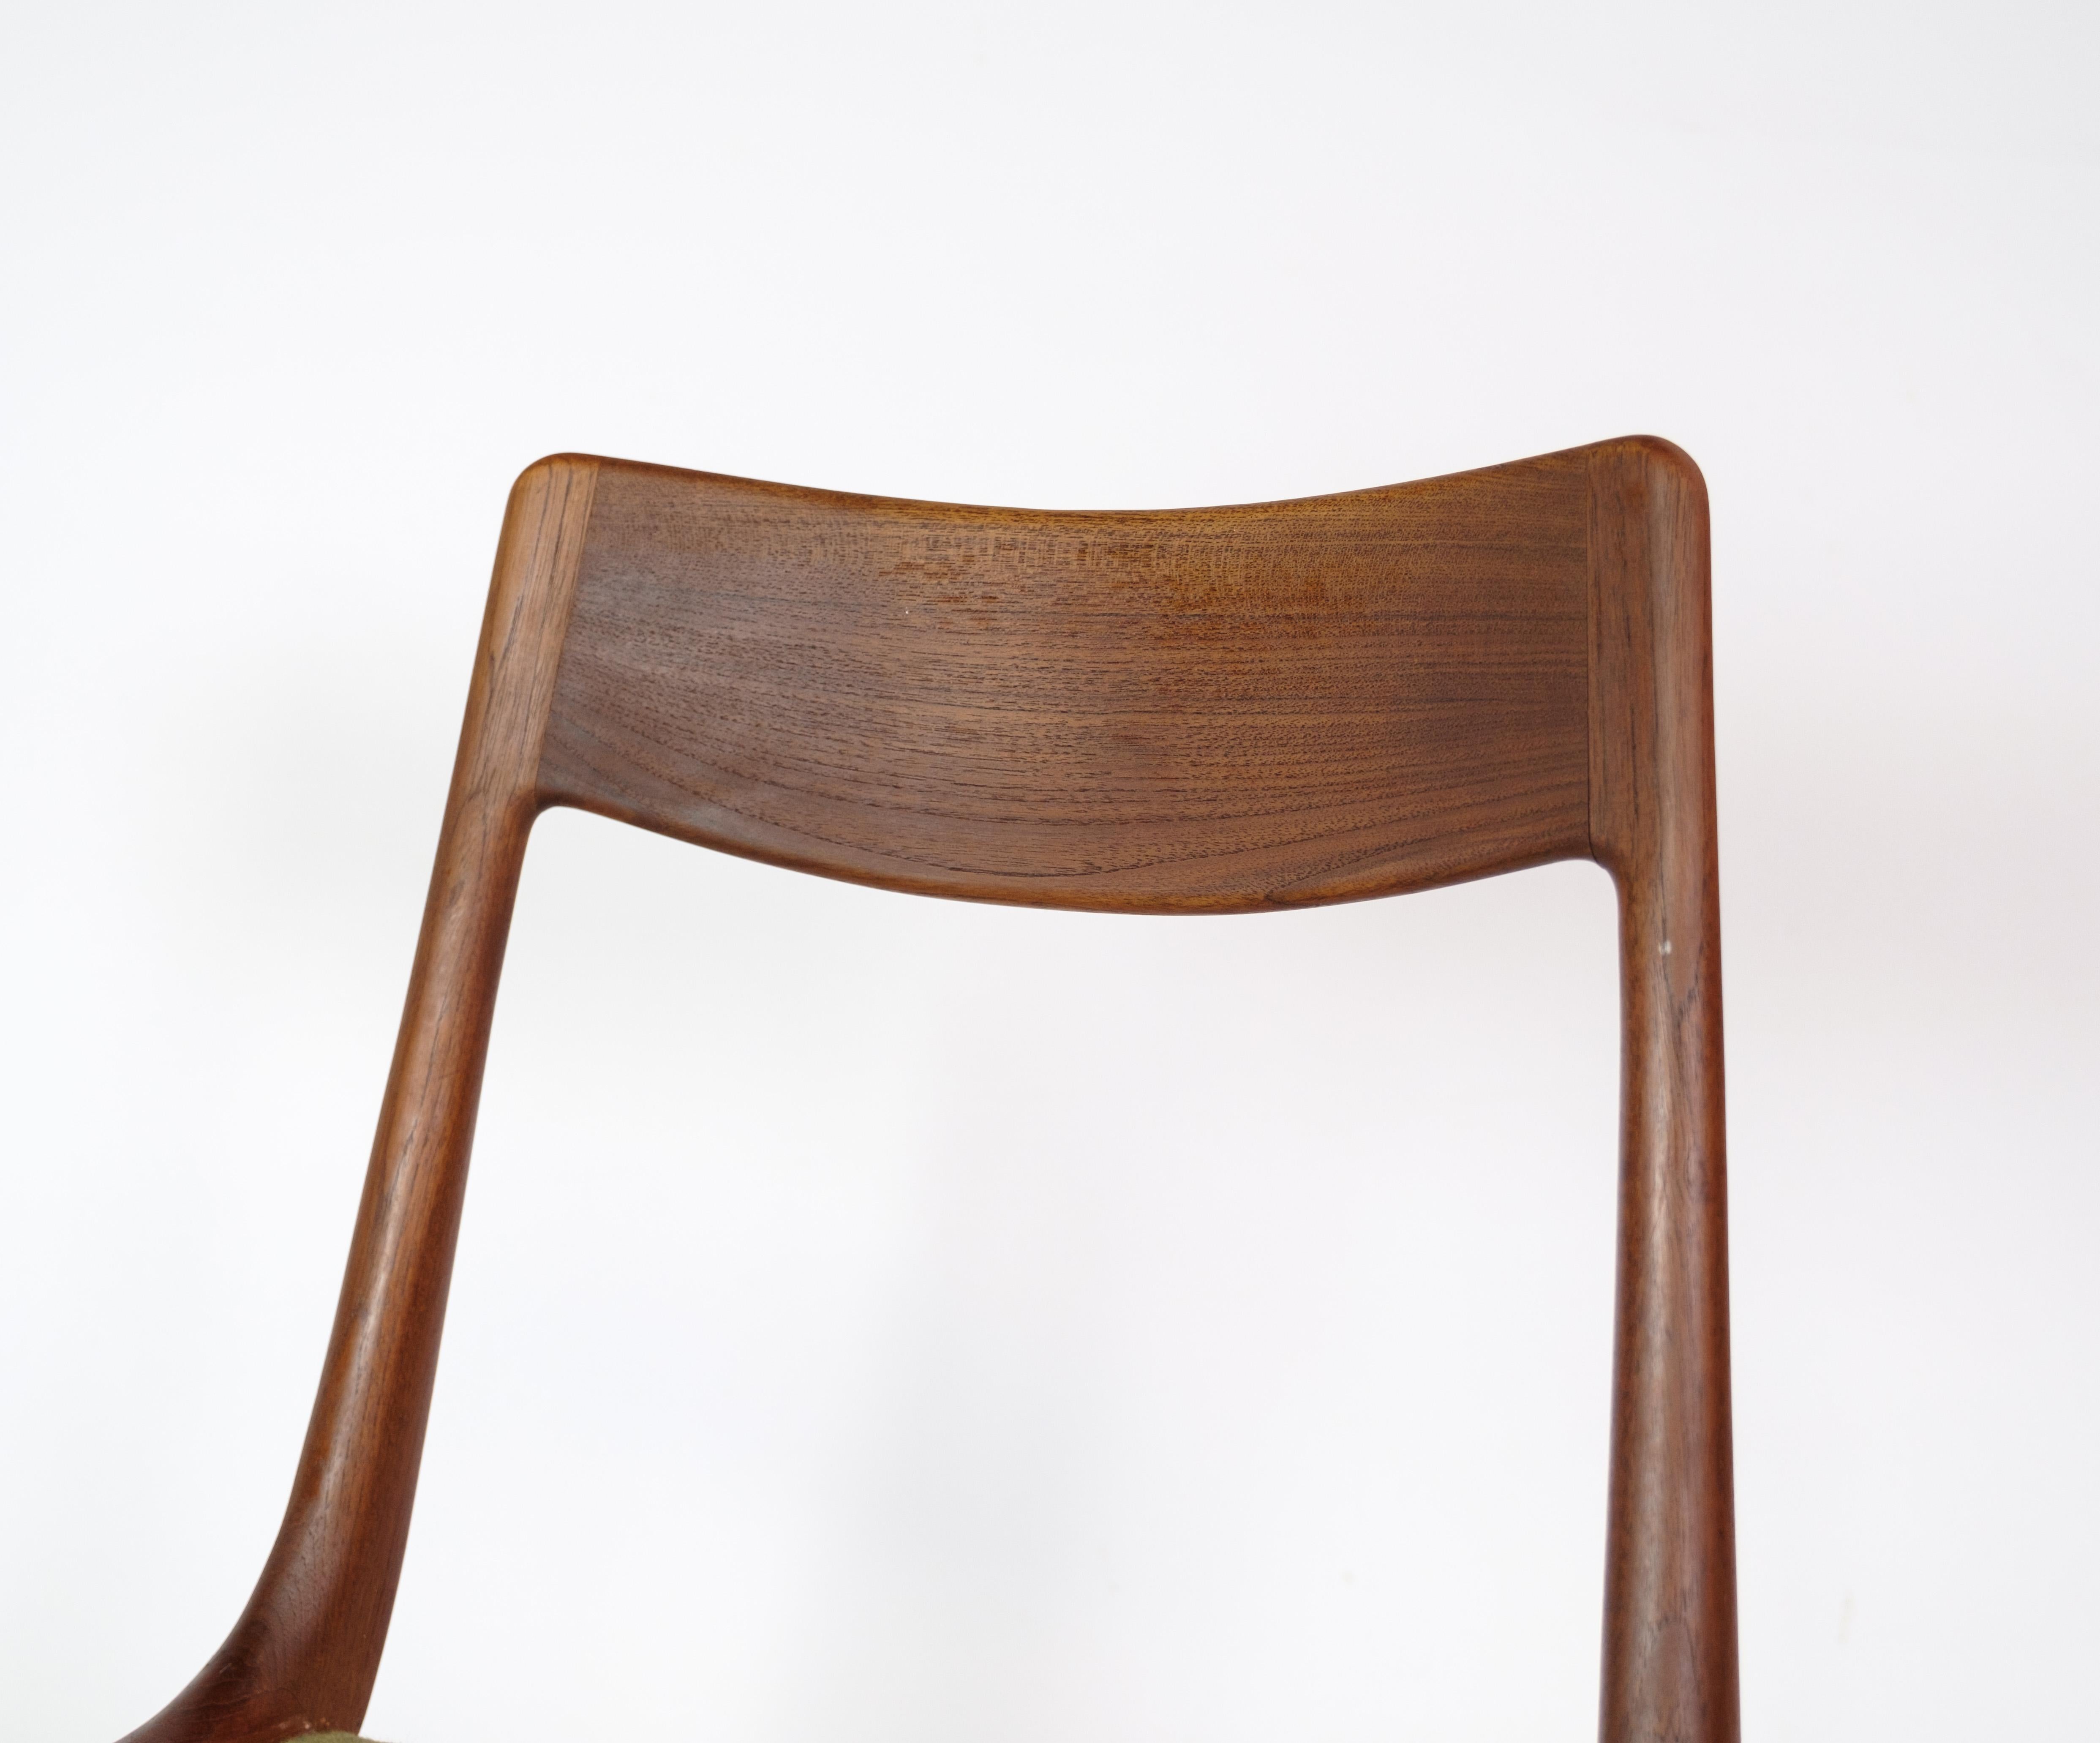 Satz von vier Esszimmerstühlen, Modell Boomerang, entworfen von Alfred Christensen aus Teakholz, hergestellt von der Slagelse Møbelfabrik in den 1960er Jahren. Die Stühle sind aus massivem Teakholz gefertigt und haben eine Sitzfläche aus grün